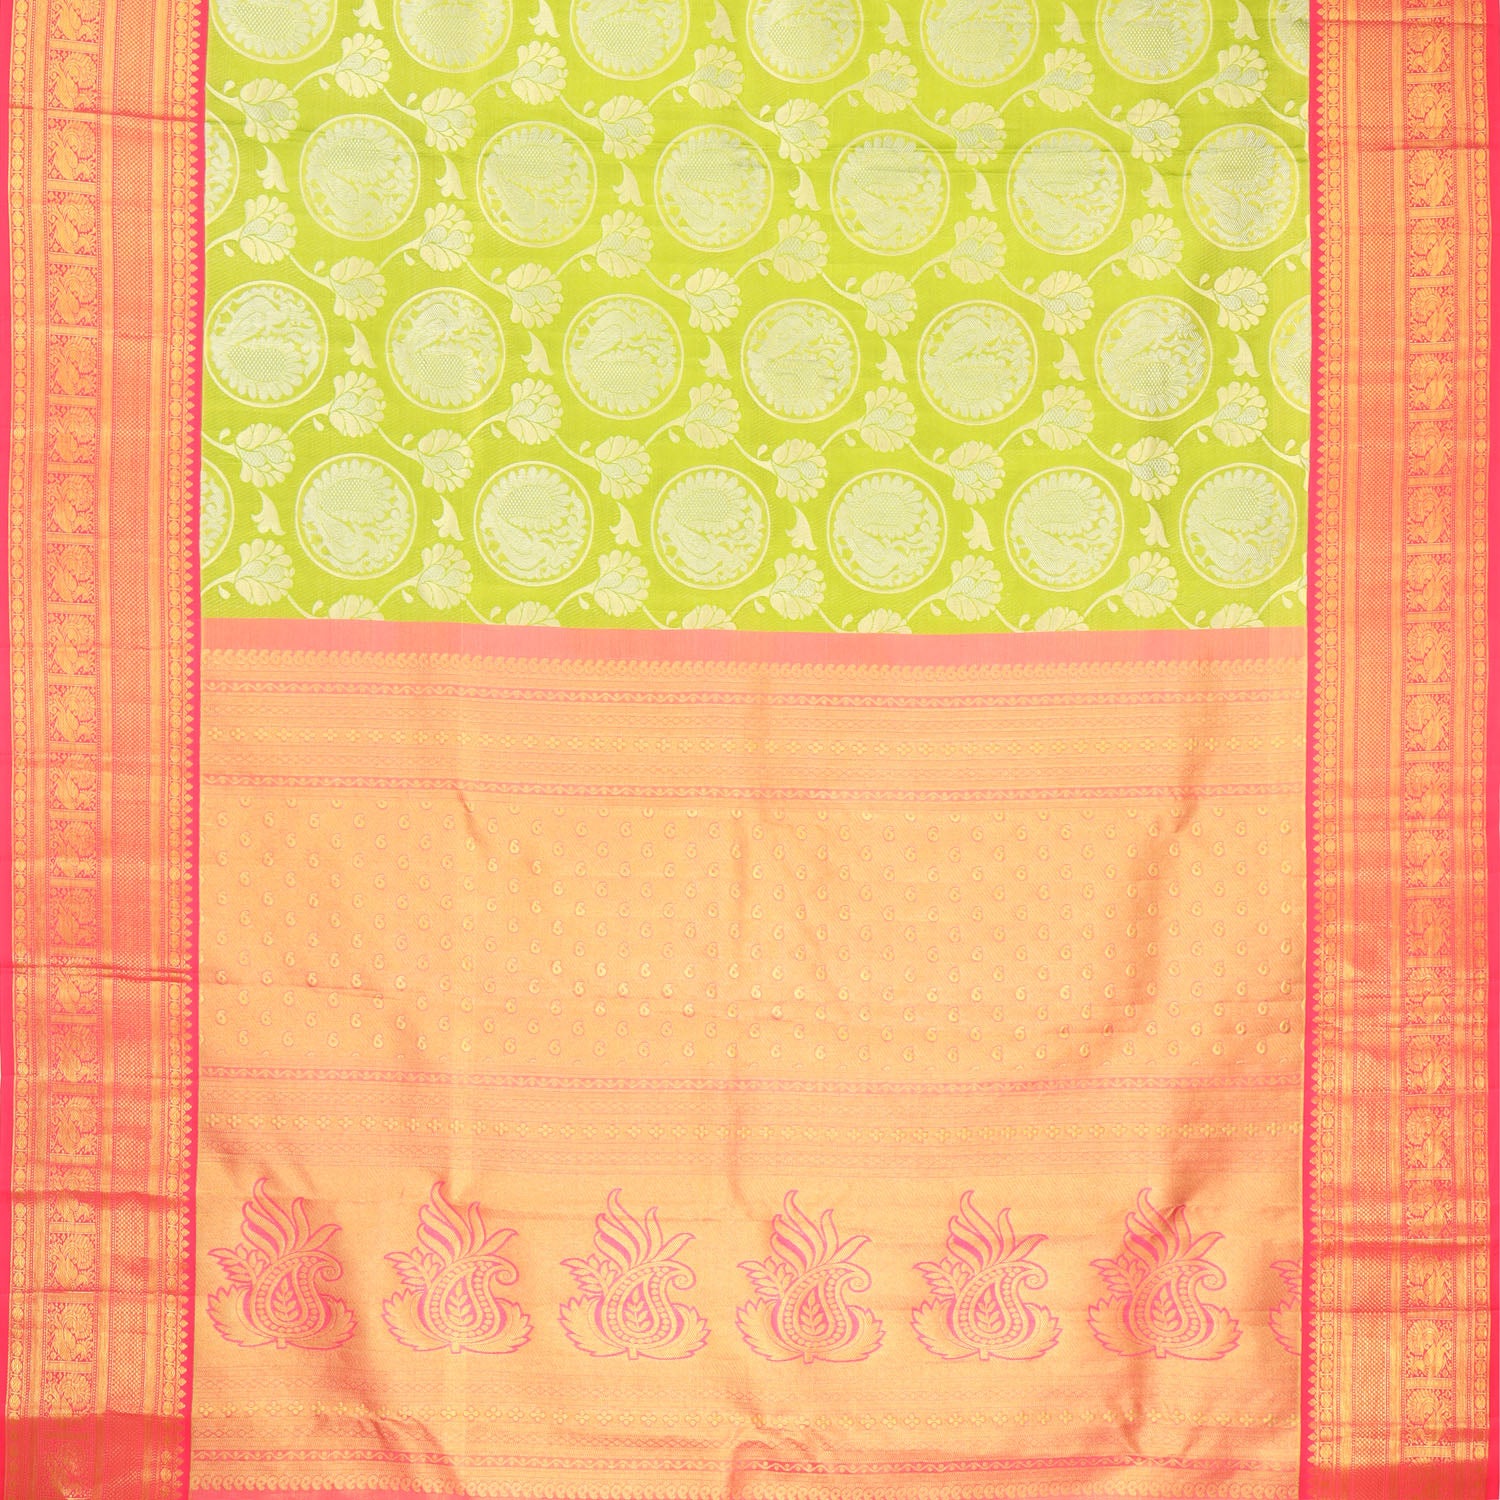 Green Kanjivaram Silk Saree With Floral And Bird Motif Pattern